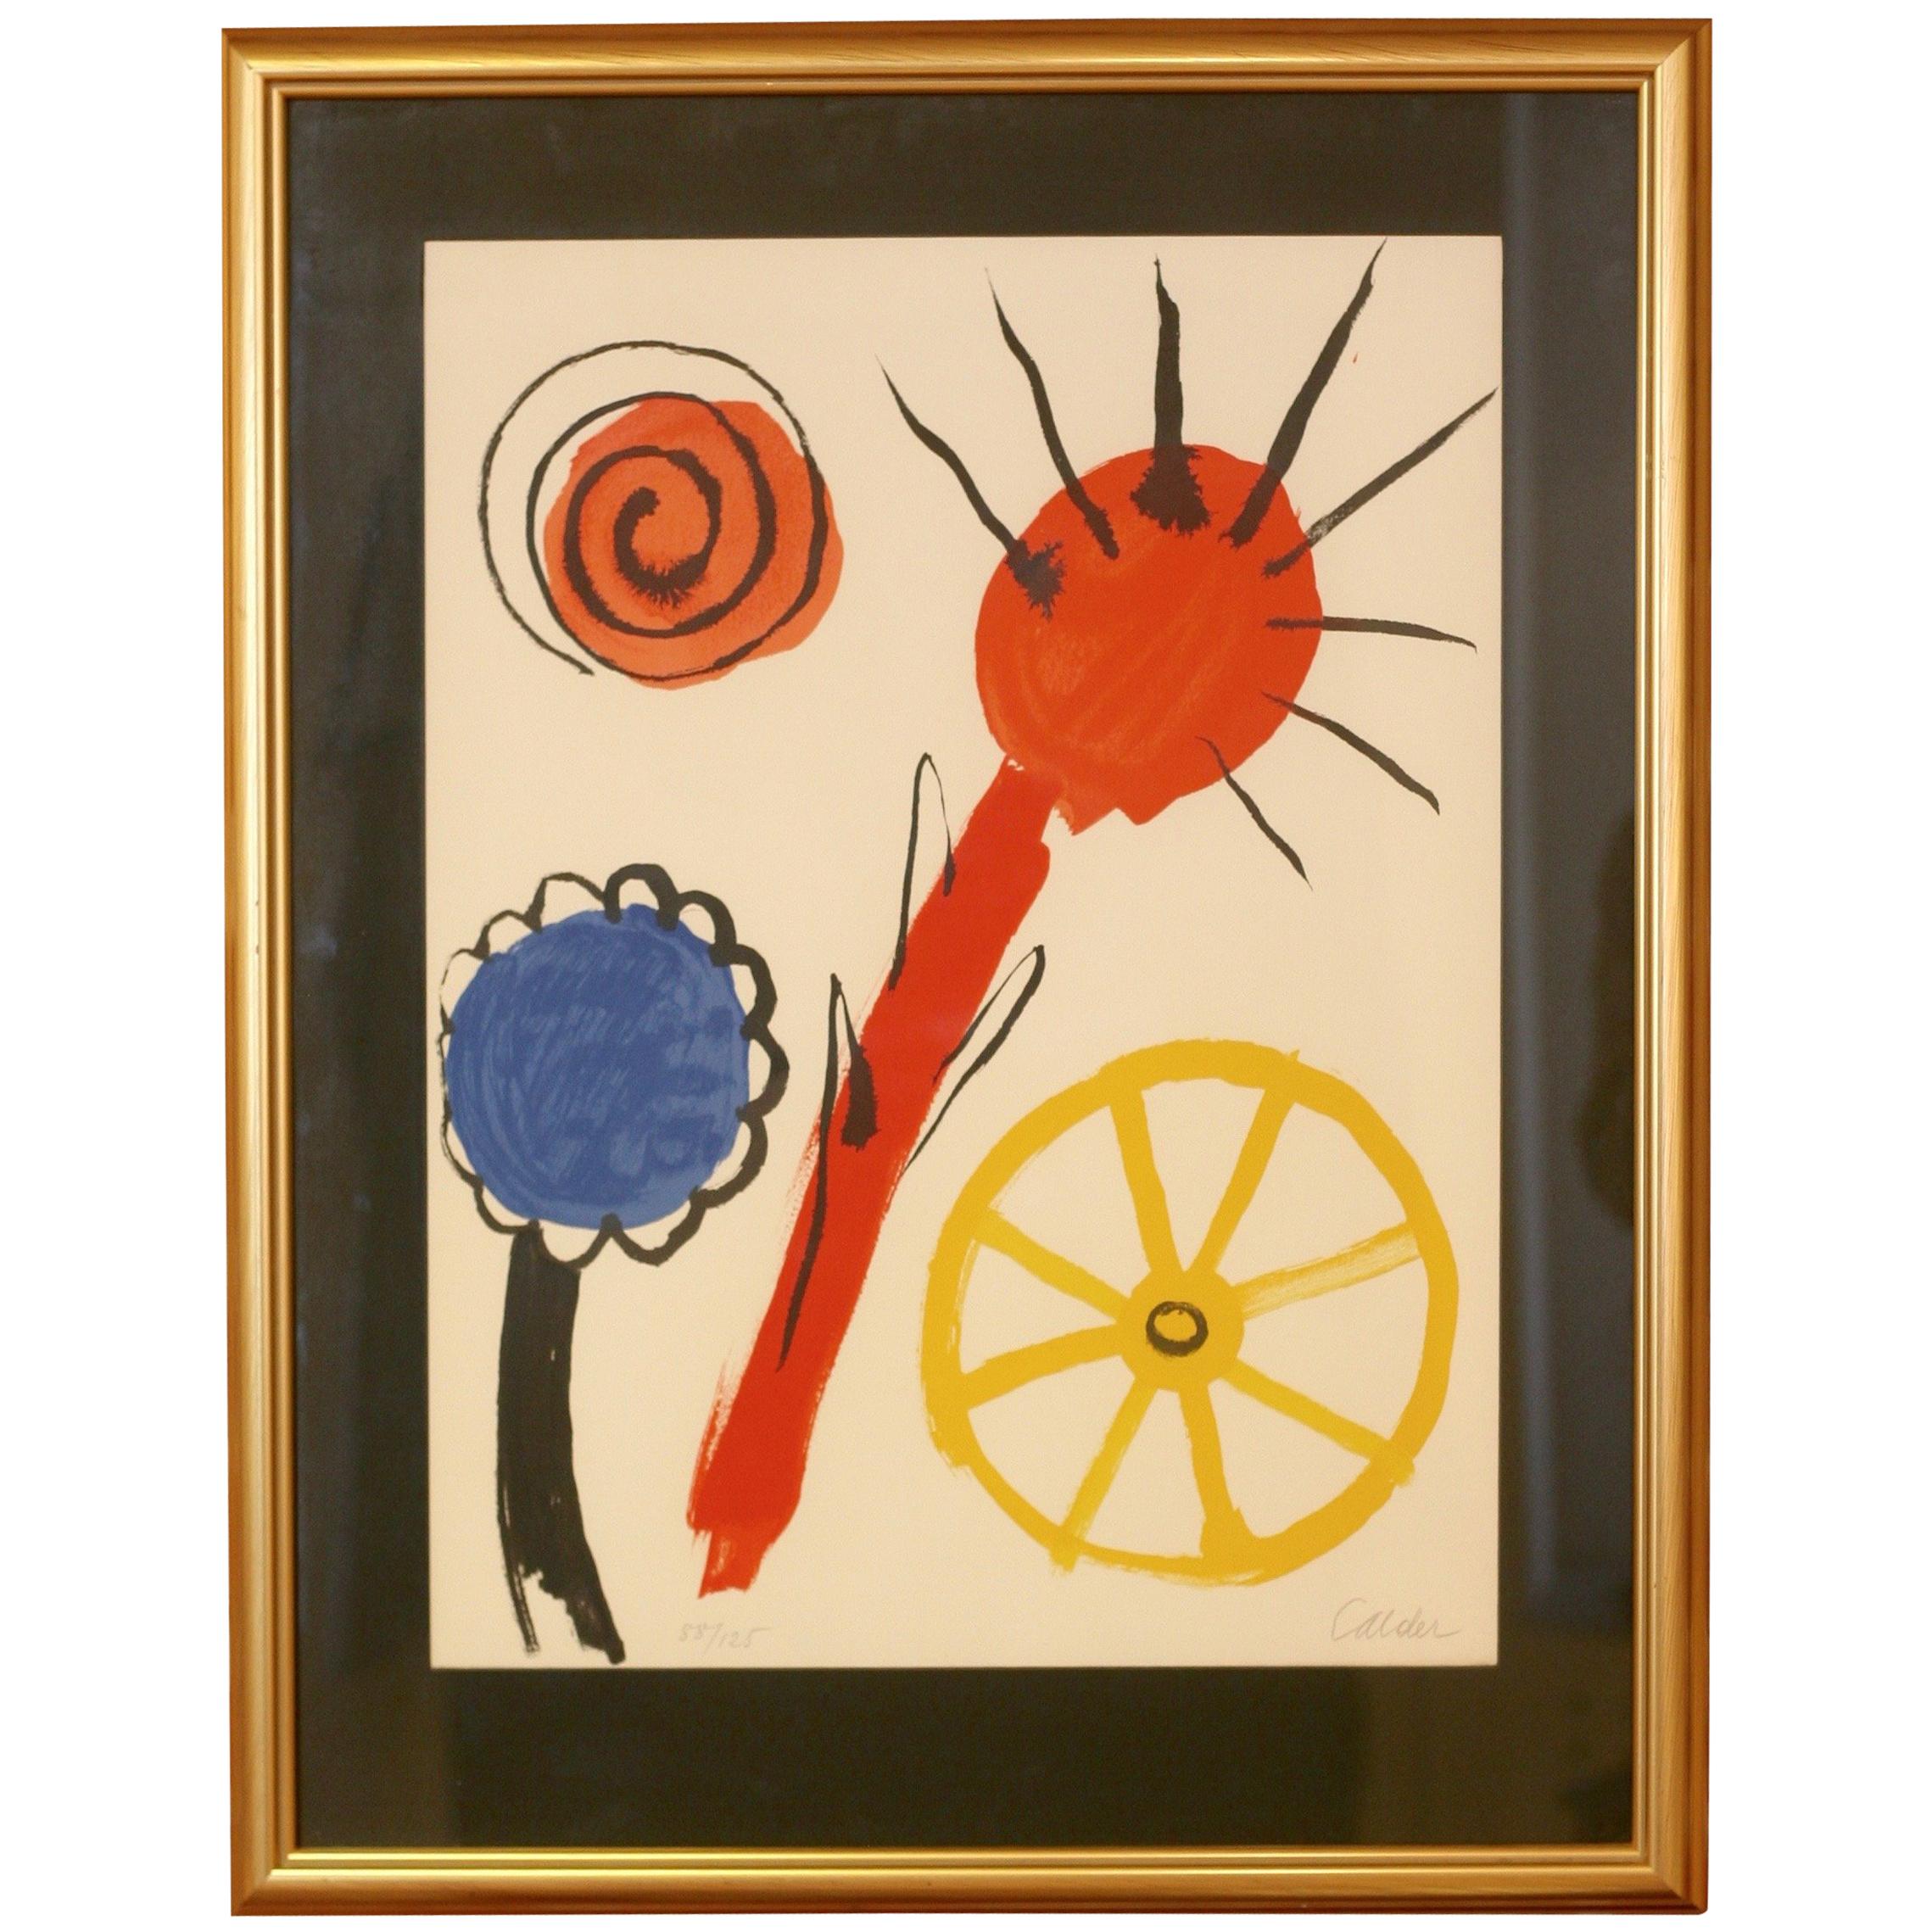 Alexander Calder lithograph 'Inspiration', 1969